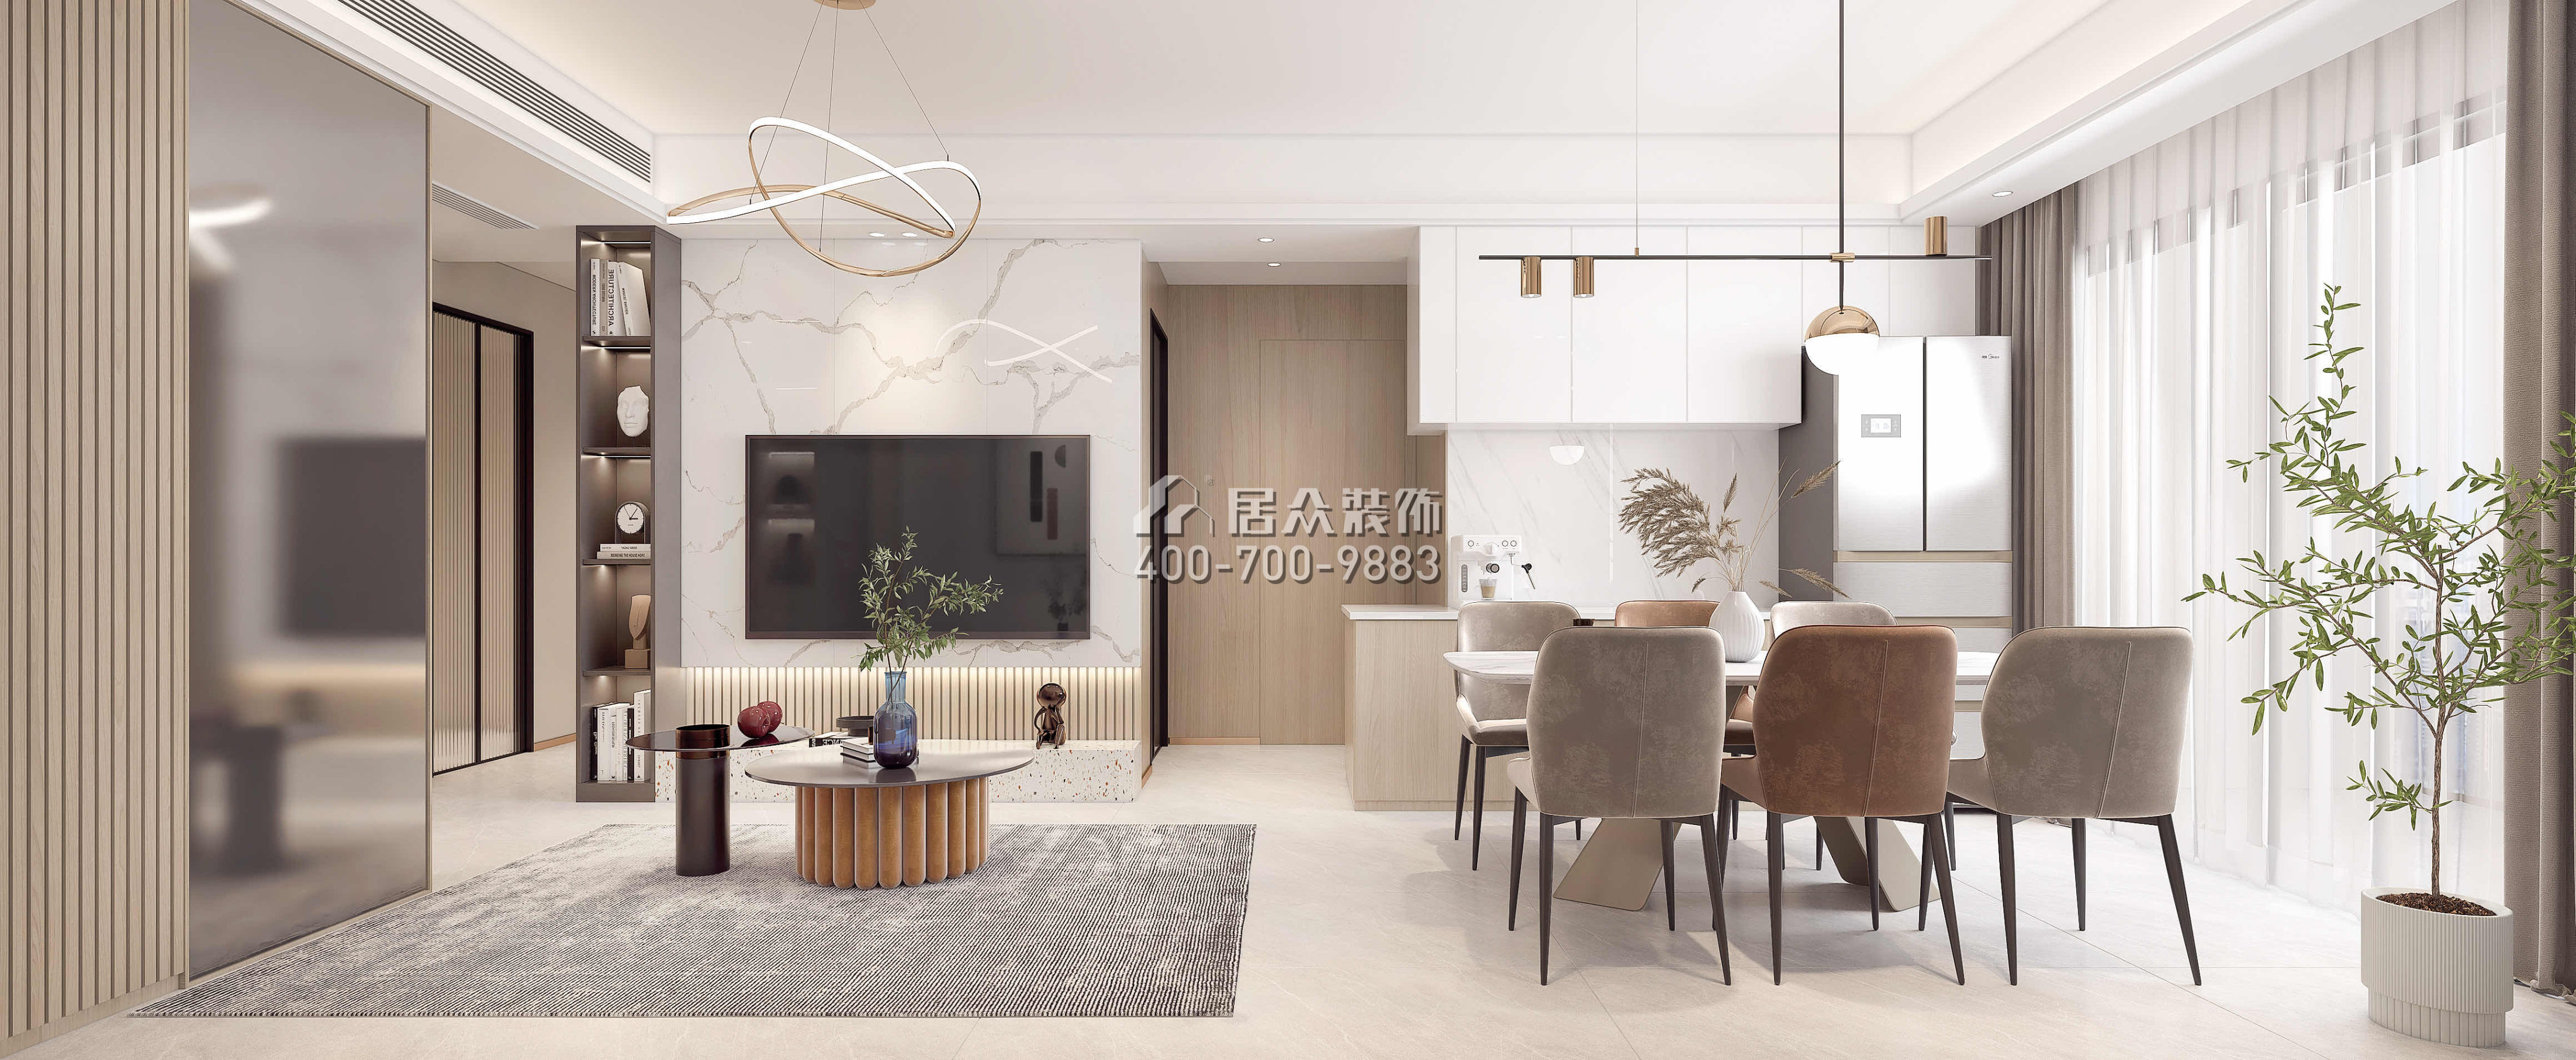 中洲滨海华府79平方米现代简约风格平层户型客厅装修效果图